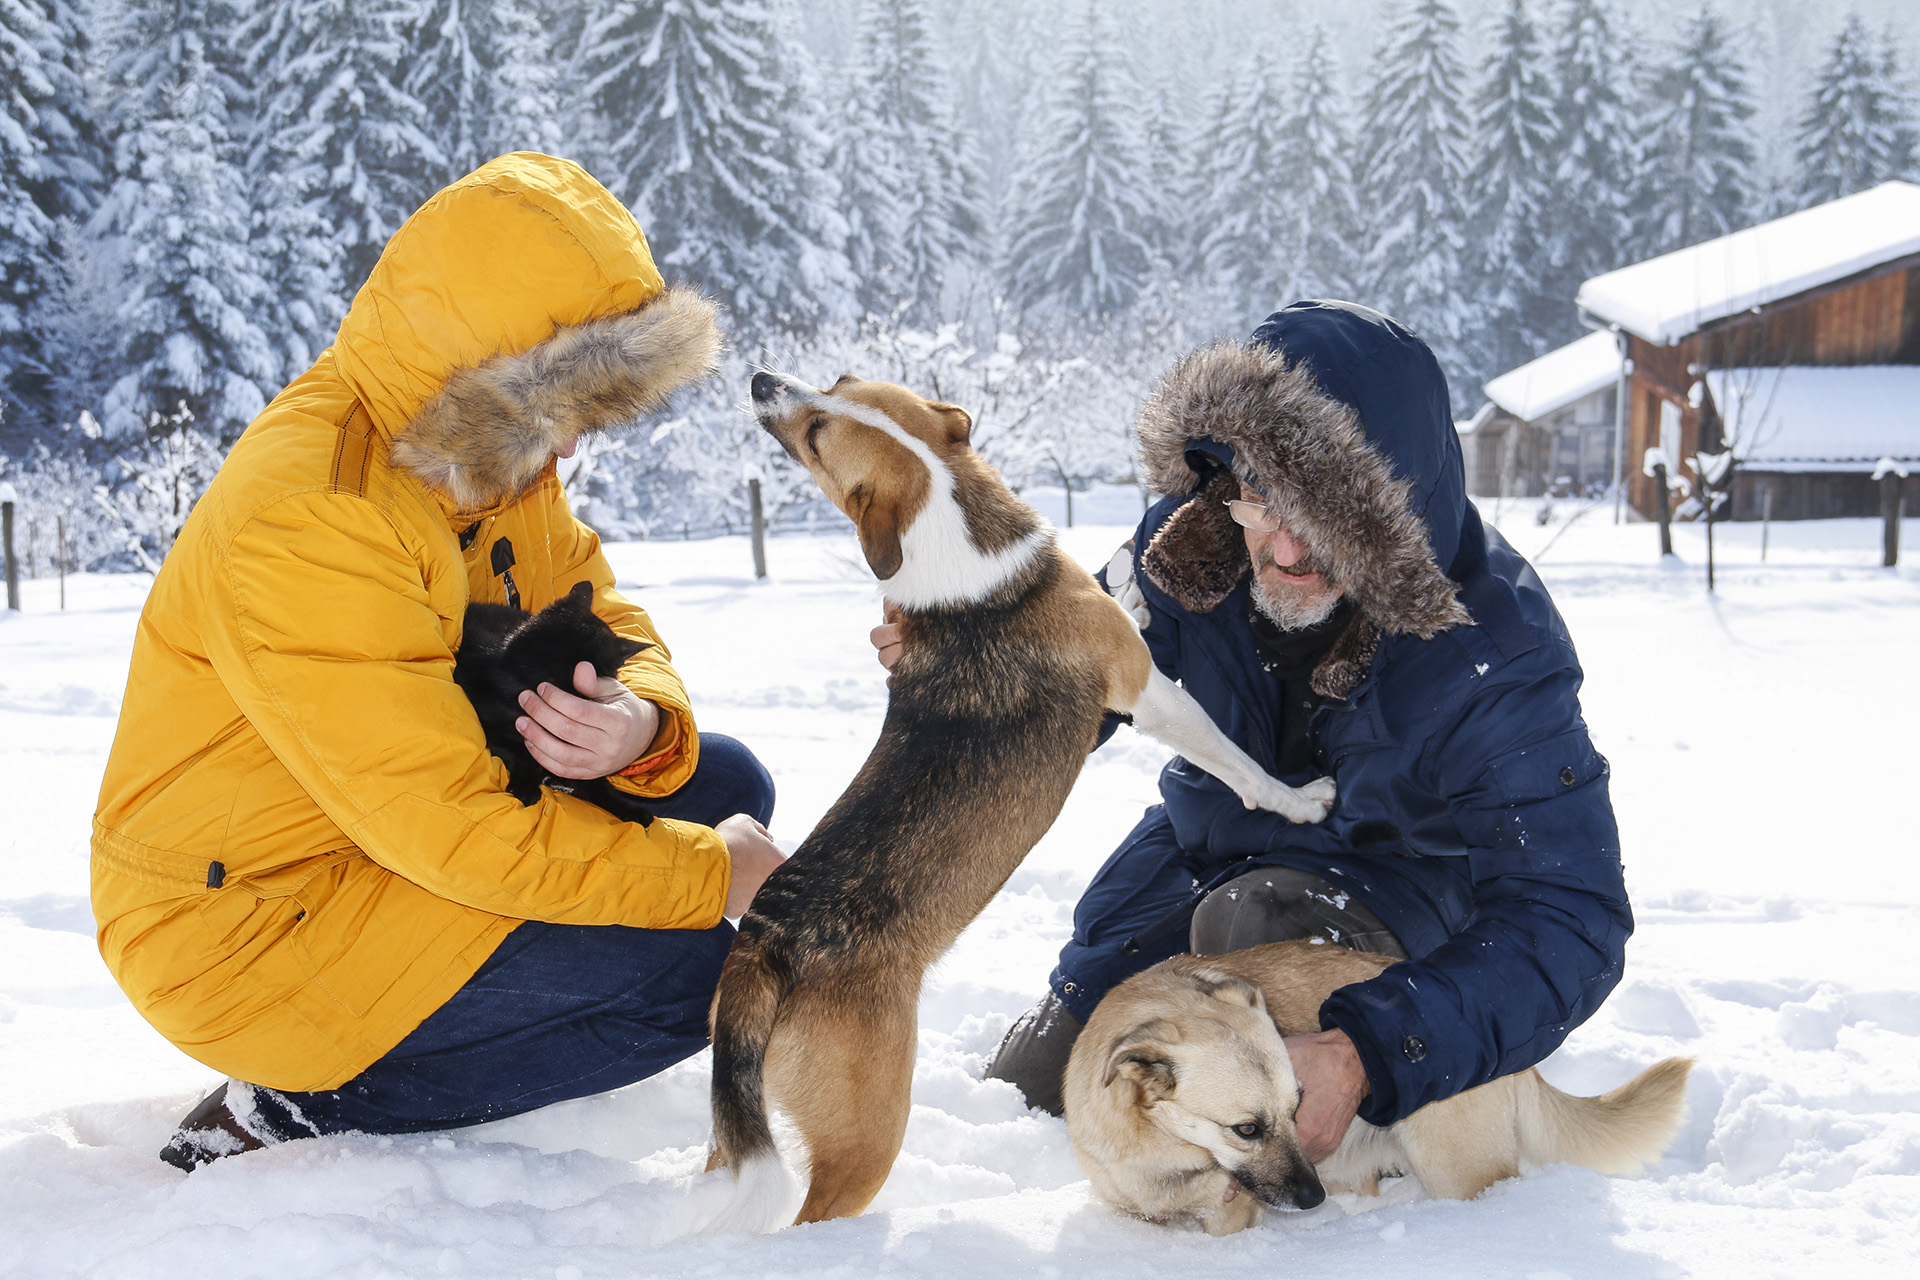 Nuestros animales de compañía dependen de nosotros para enfrentar las bajas temperaturas

(Getty Images)